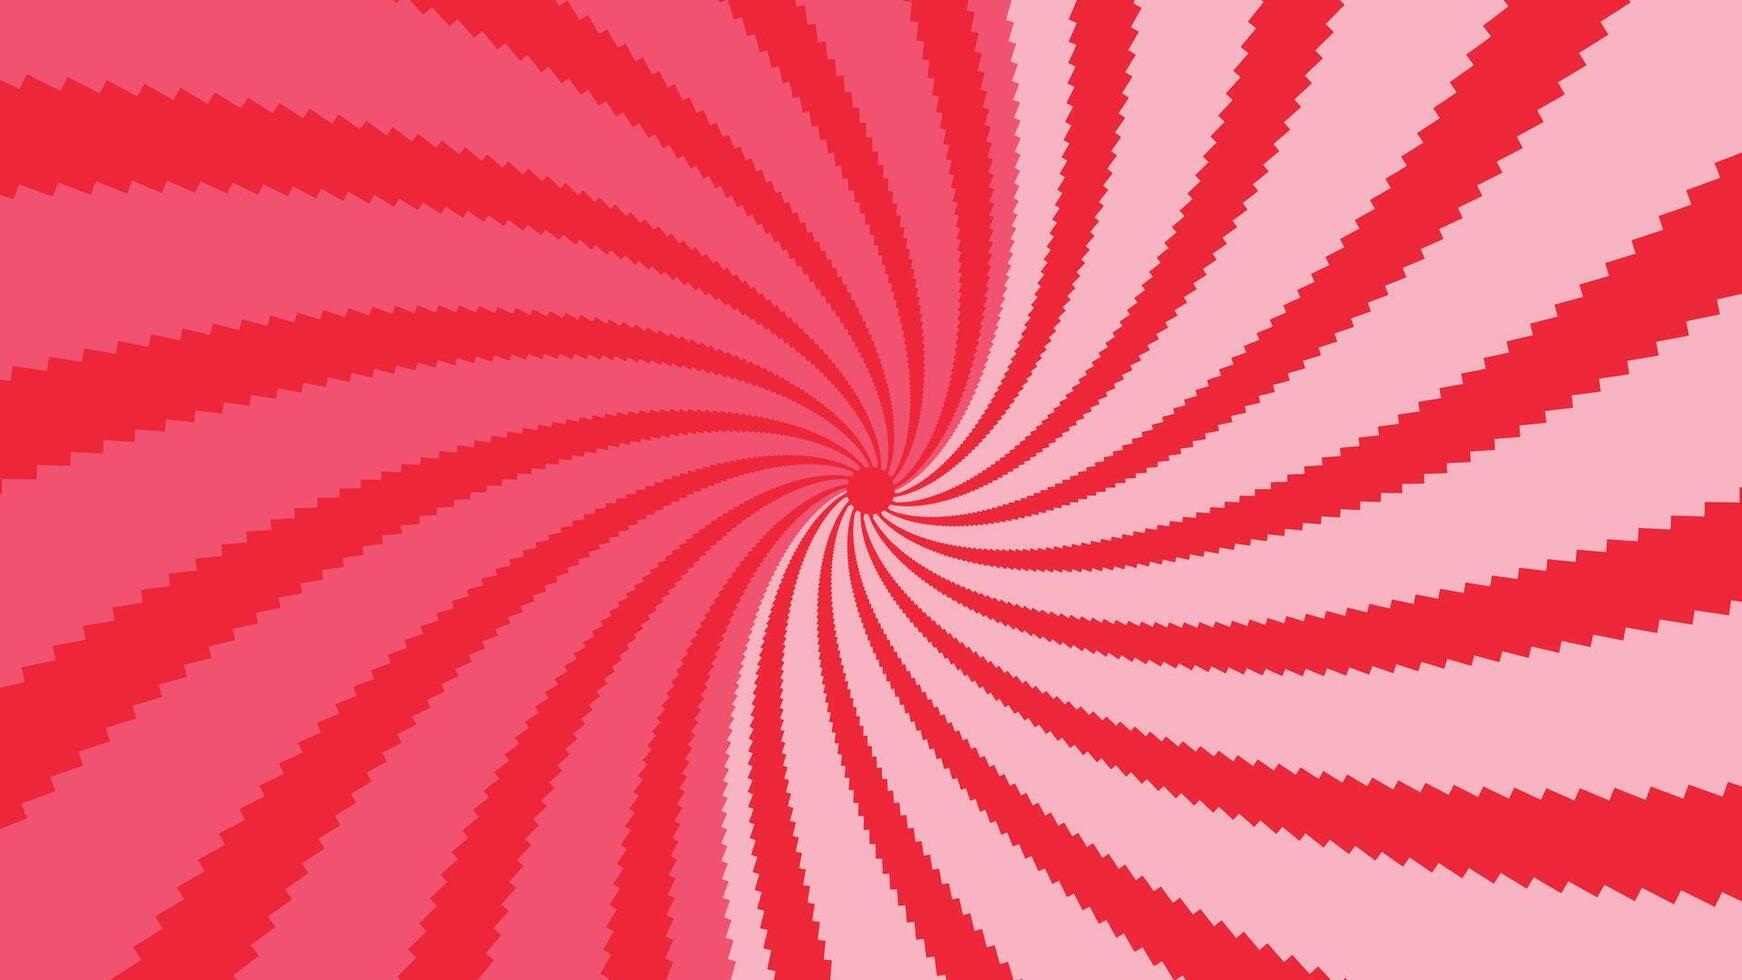 abstrato espiral pontilhado vórtice estilo urgência vermelho Rosa cor fundo. vetor